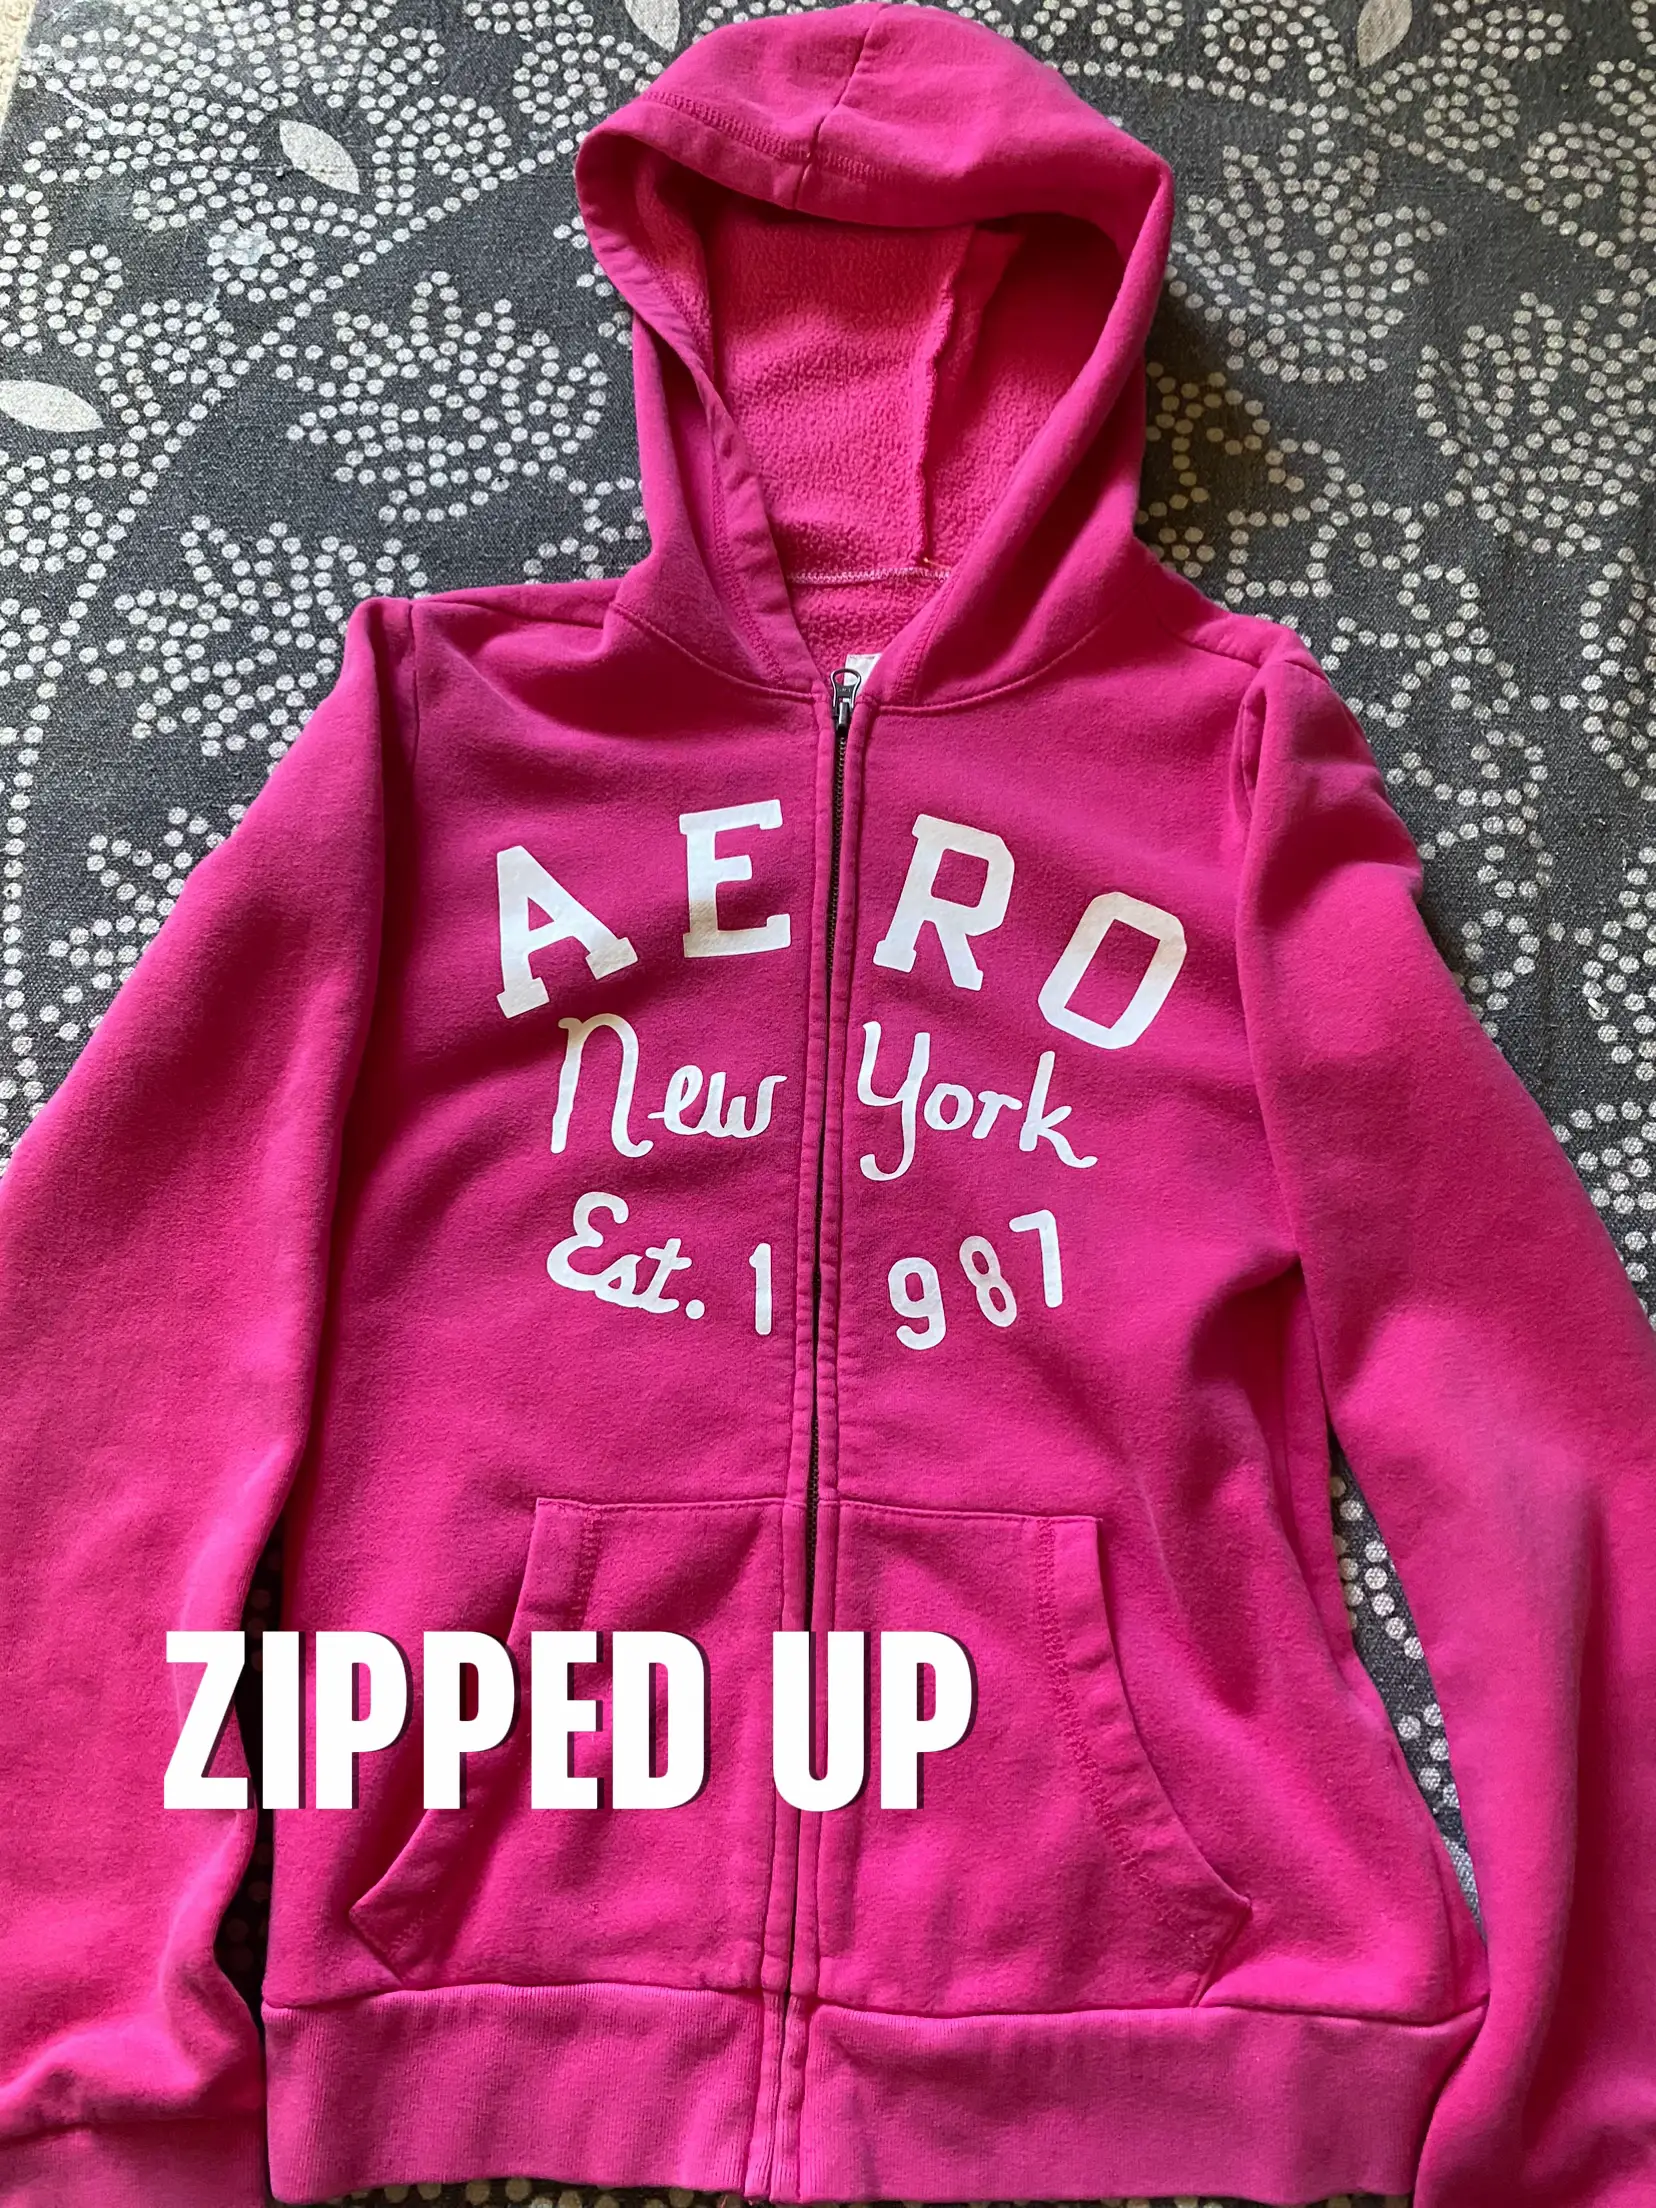 Sweatpants Aero Aeropostale Grey Dark Pink Brand Y2K - Depop